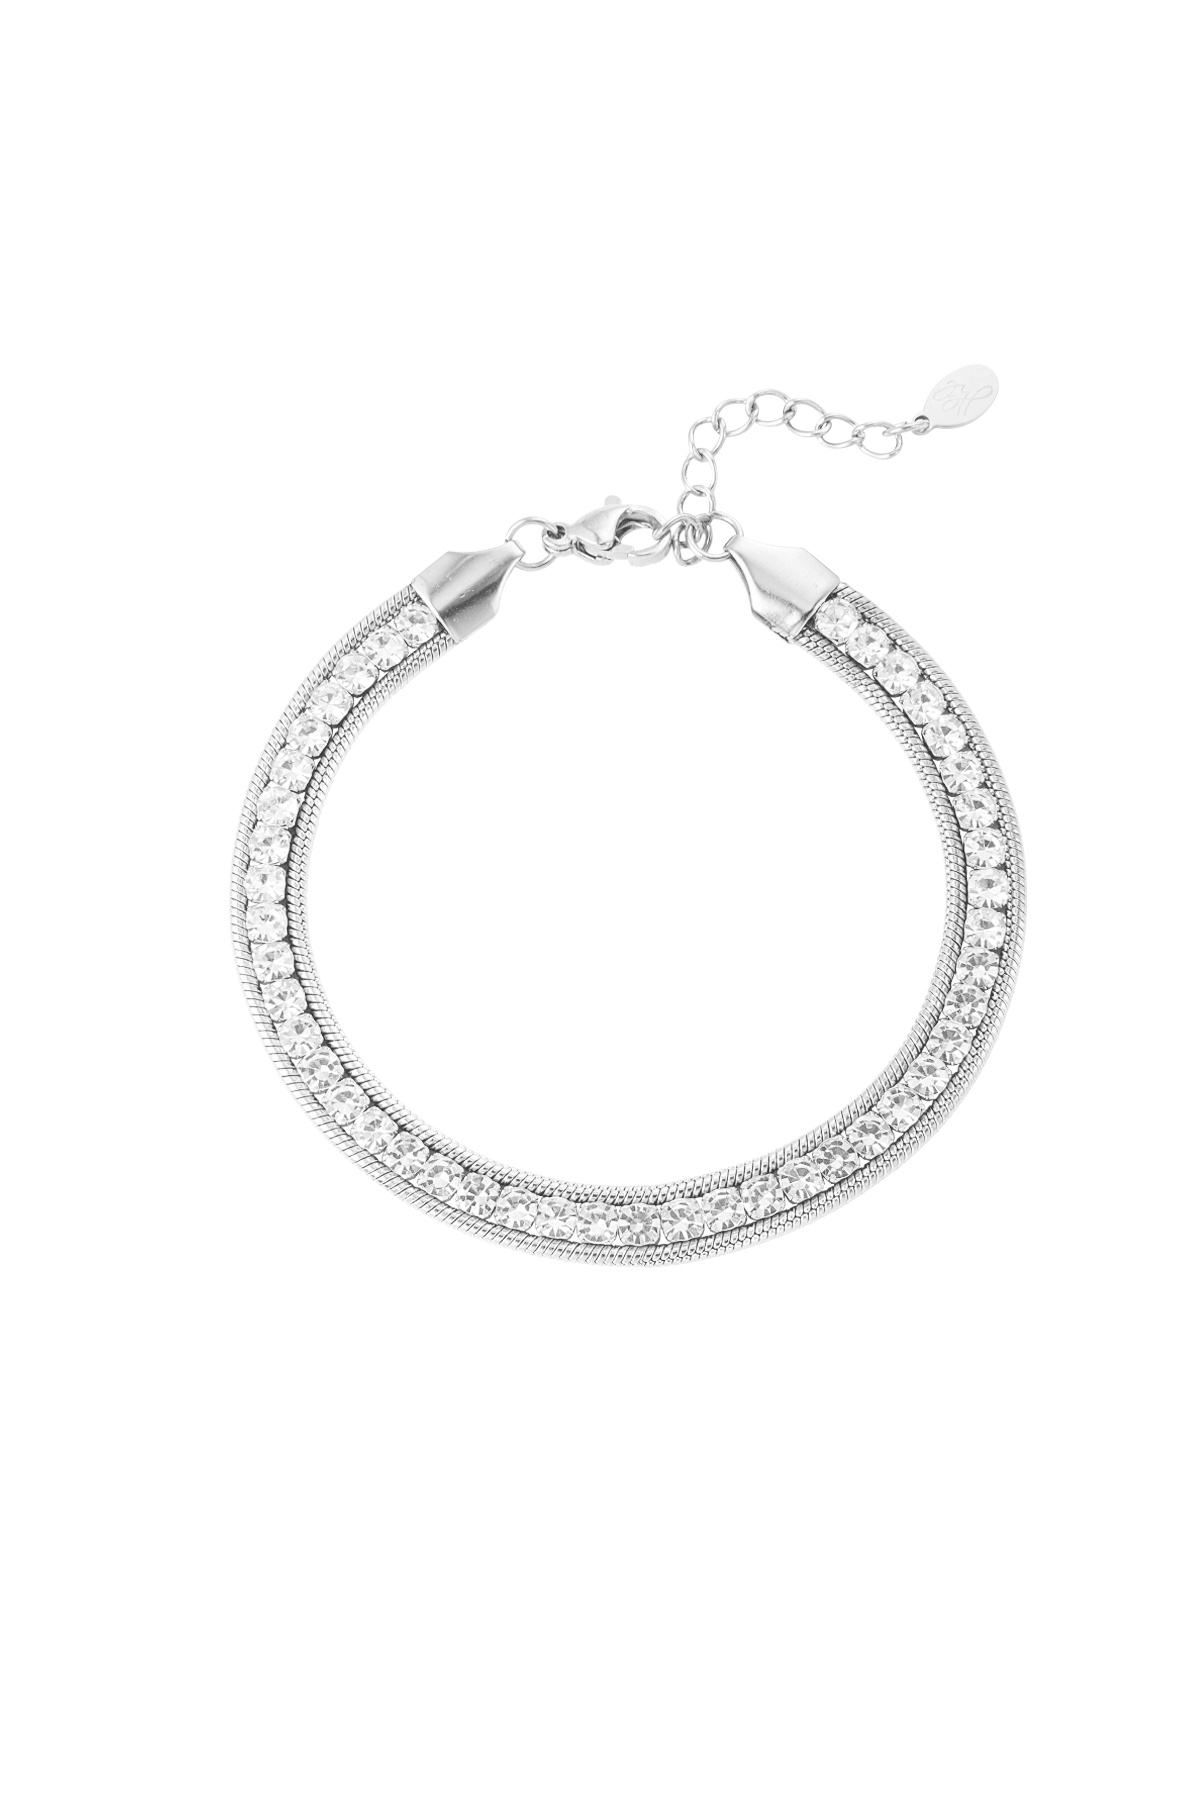 Bling bracelet - silver